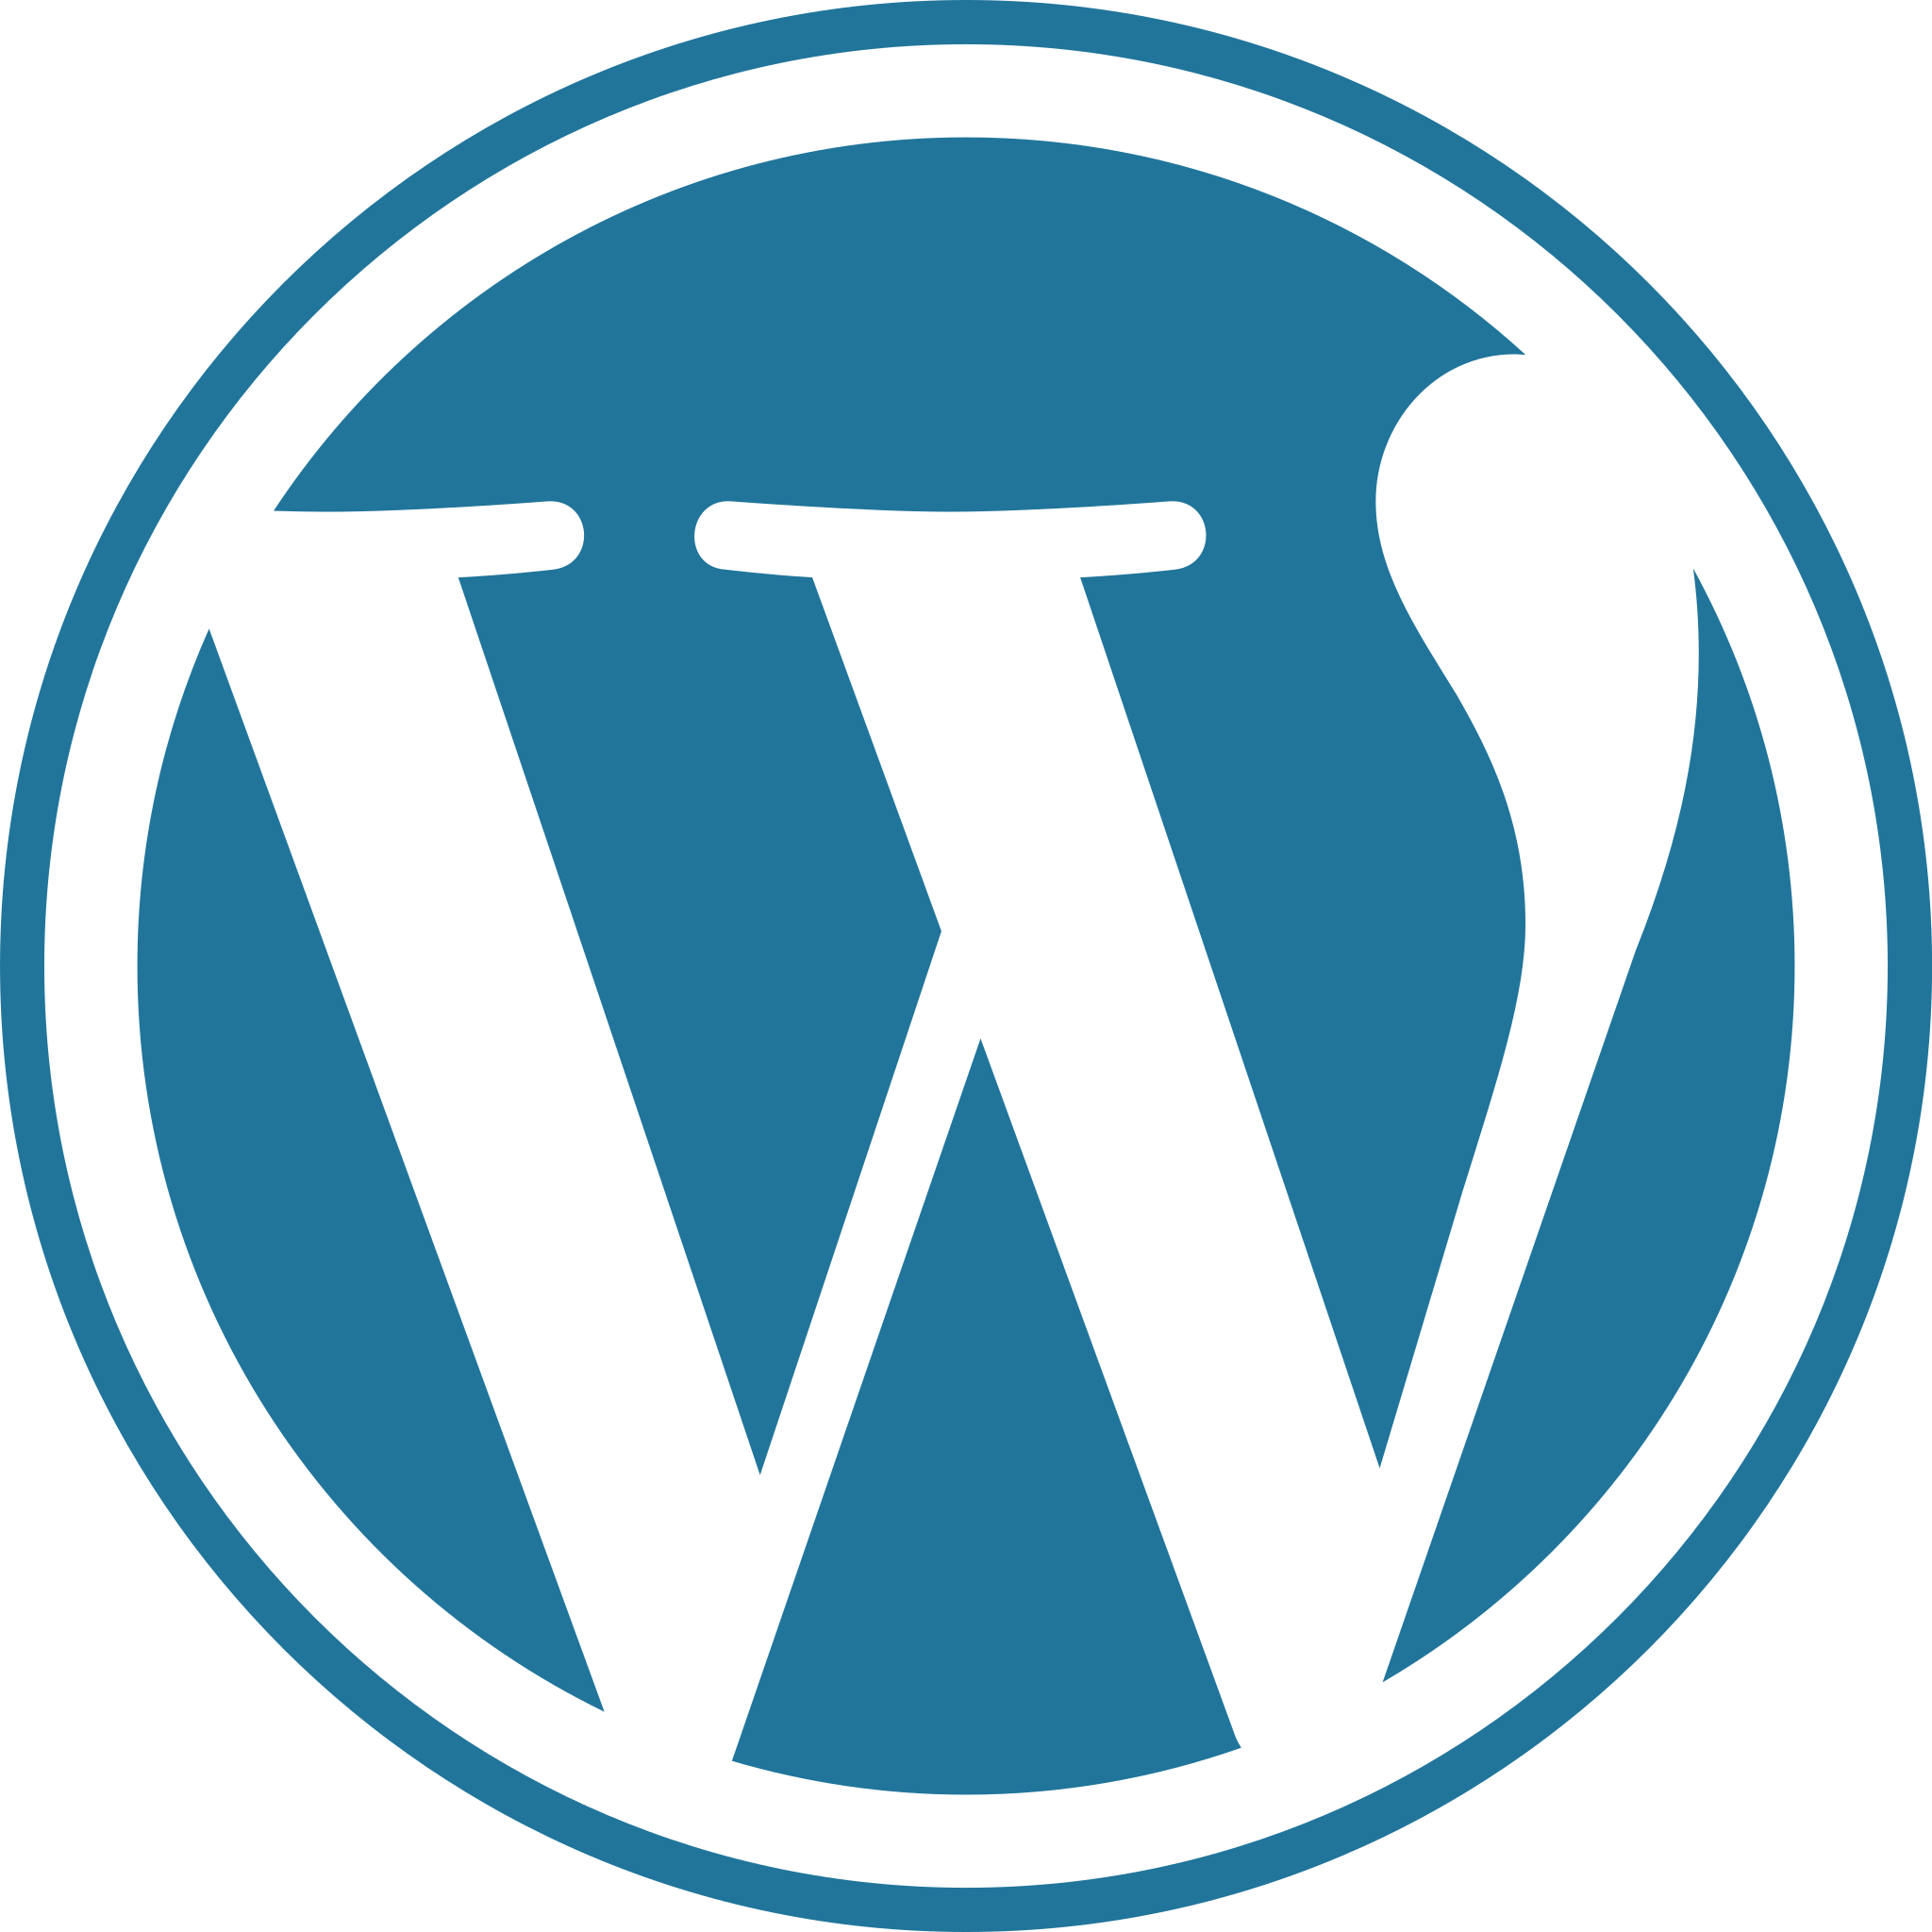 Dit is het logo van wordpress